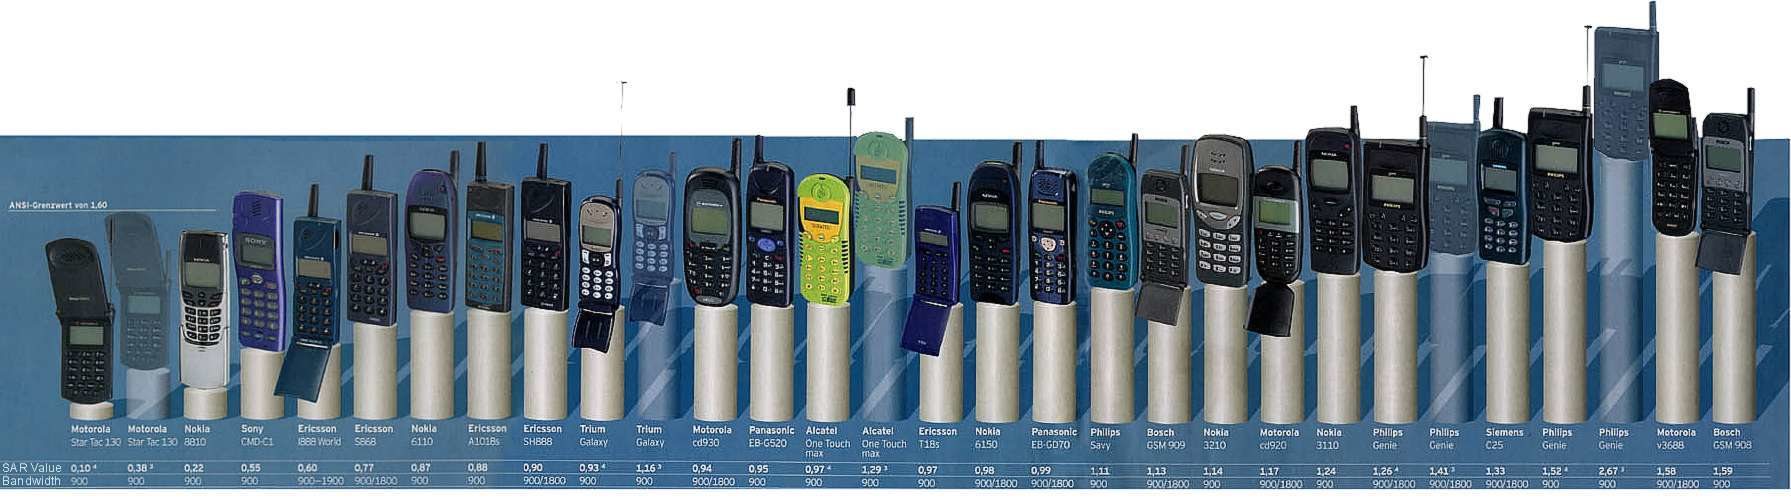 Los telefonos más antiguos tenían un SAR más alto.